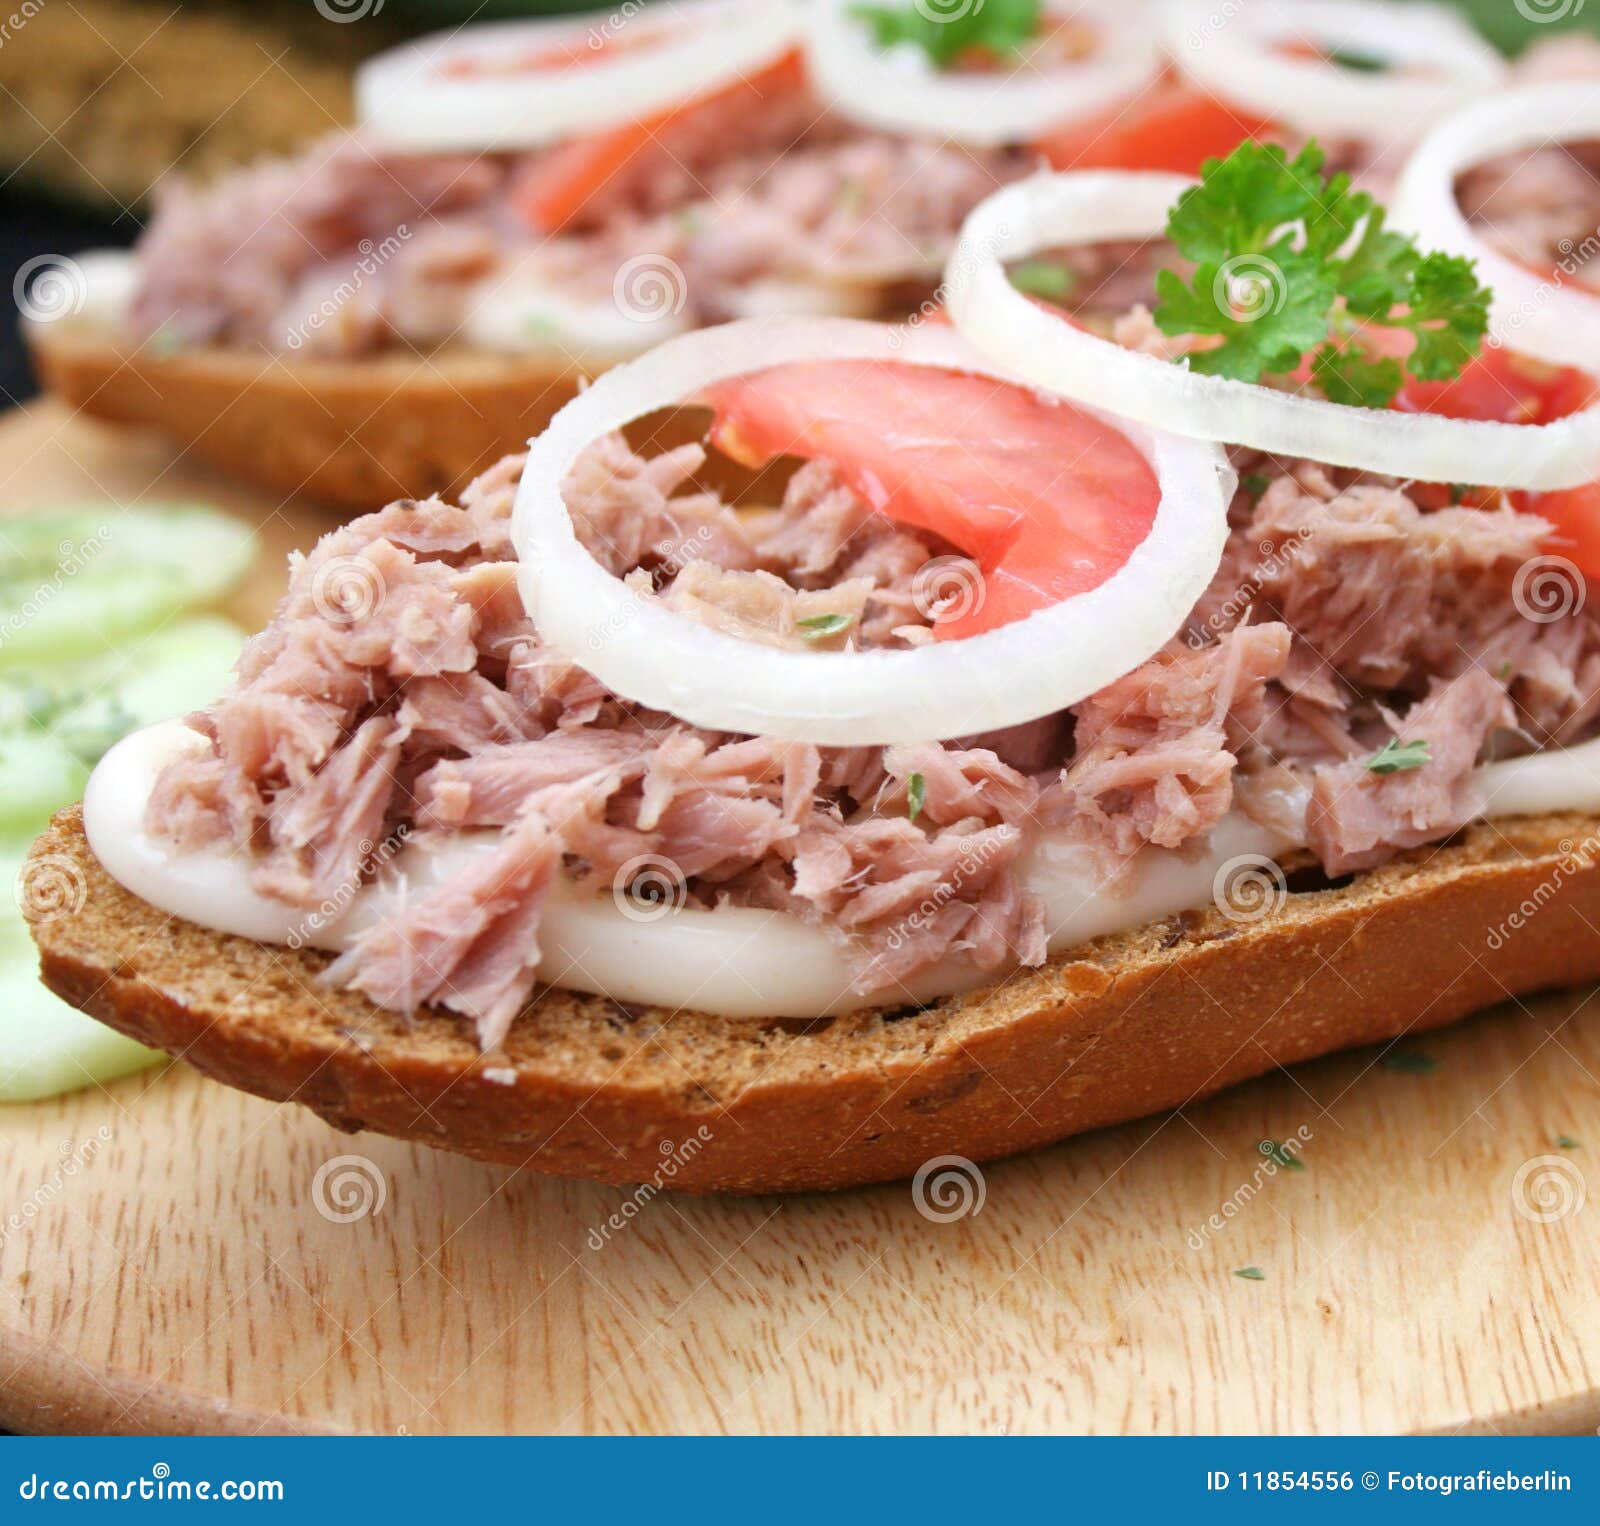 Bread with tuna fish stock photo. Image of snack, bread - 11854556